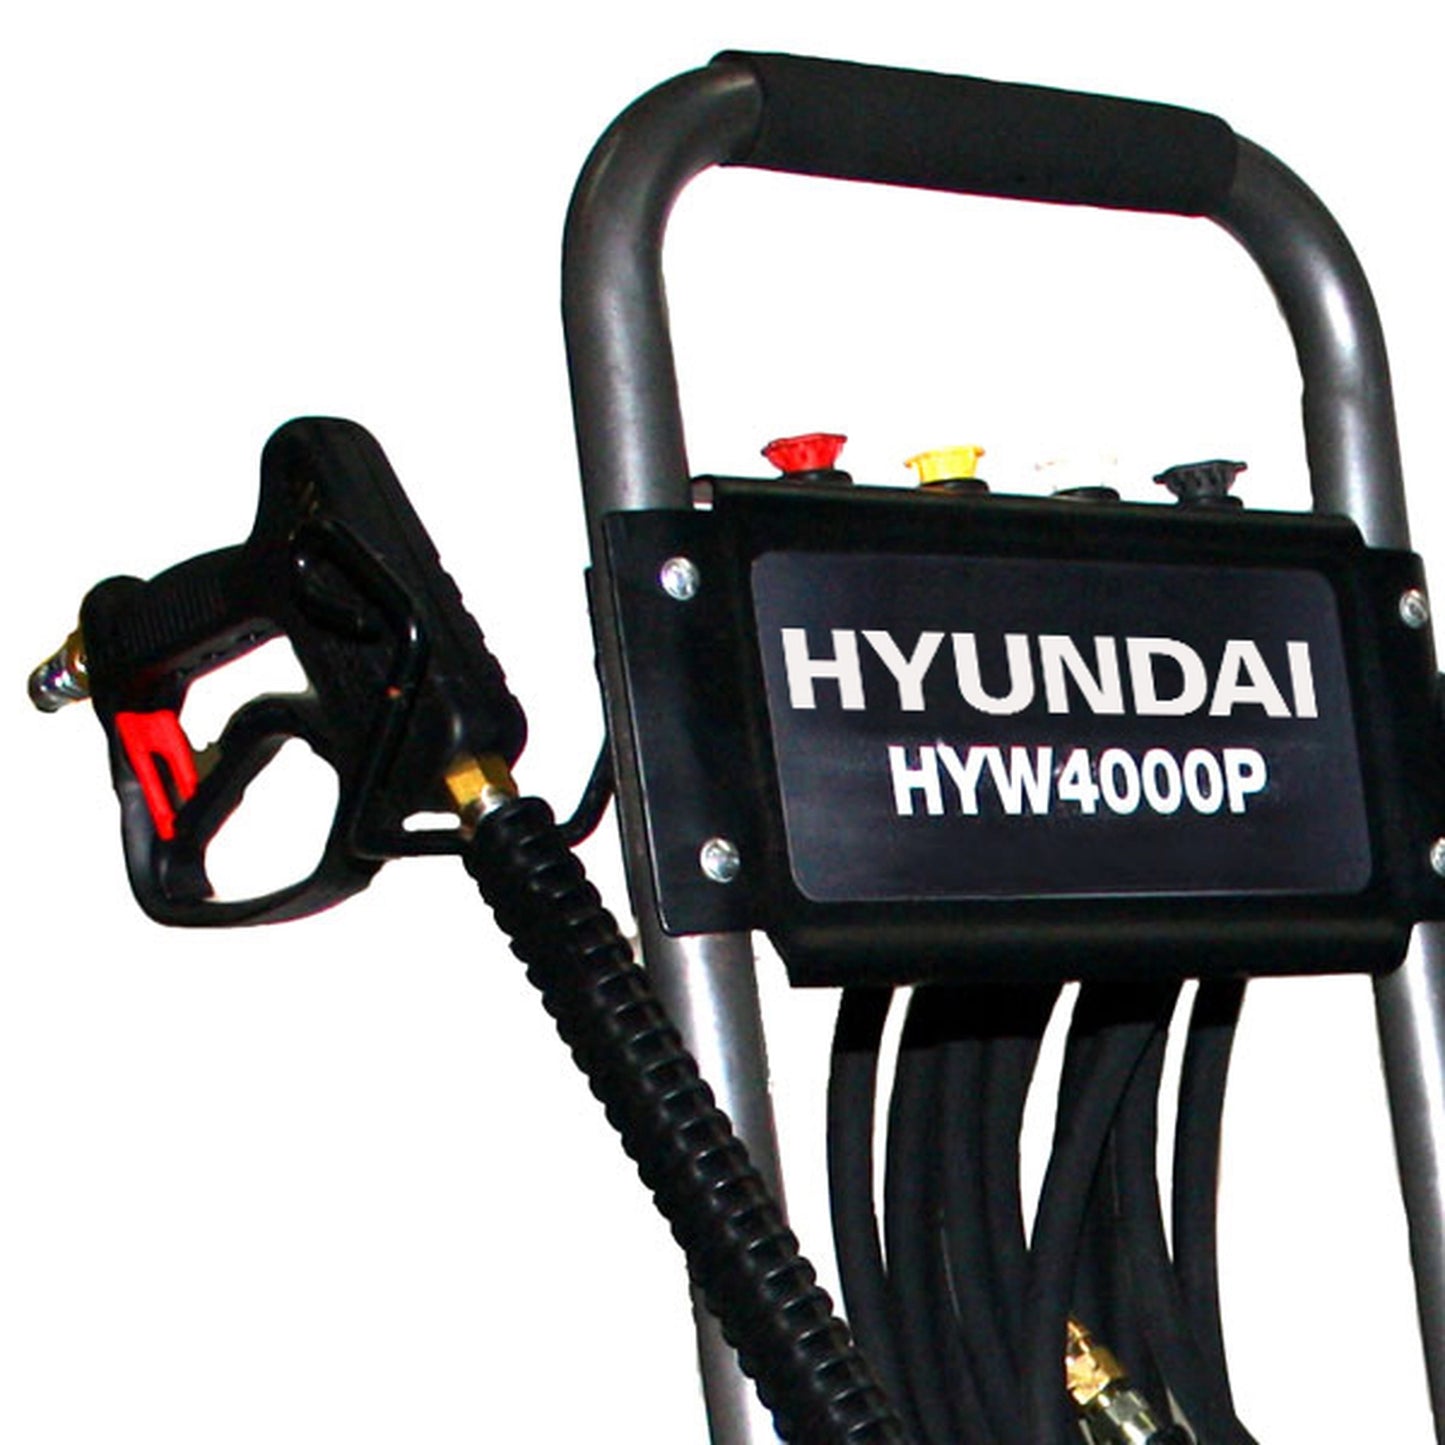 Hyundai HYW4000P Petrol Pressure Washer